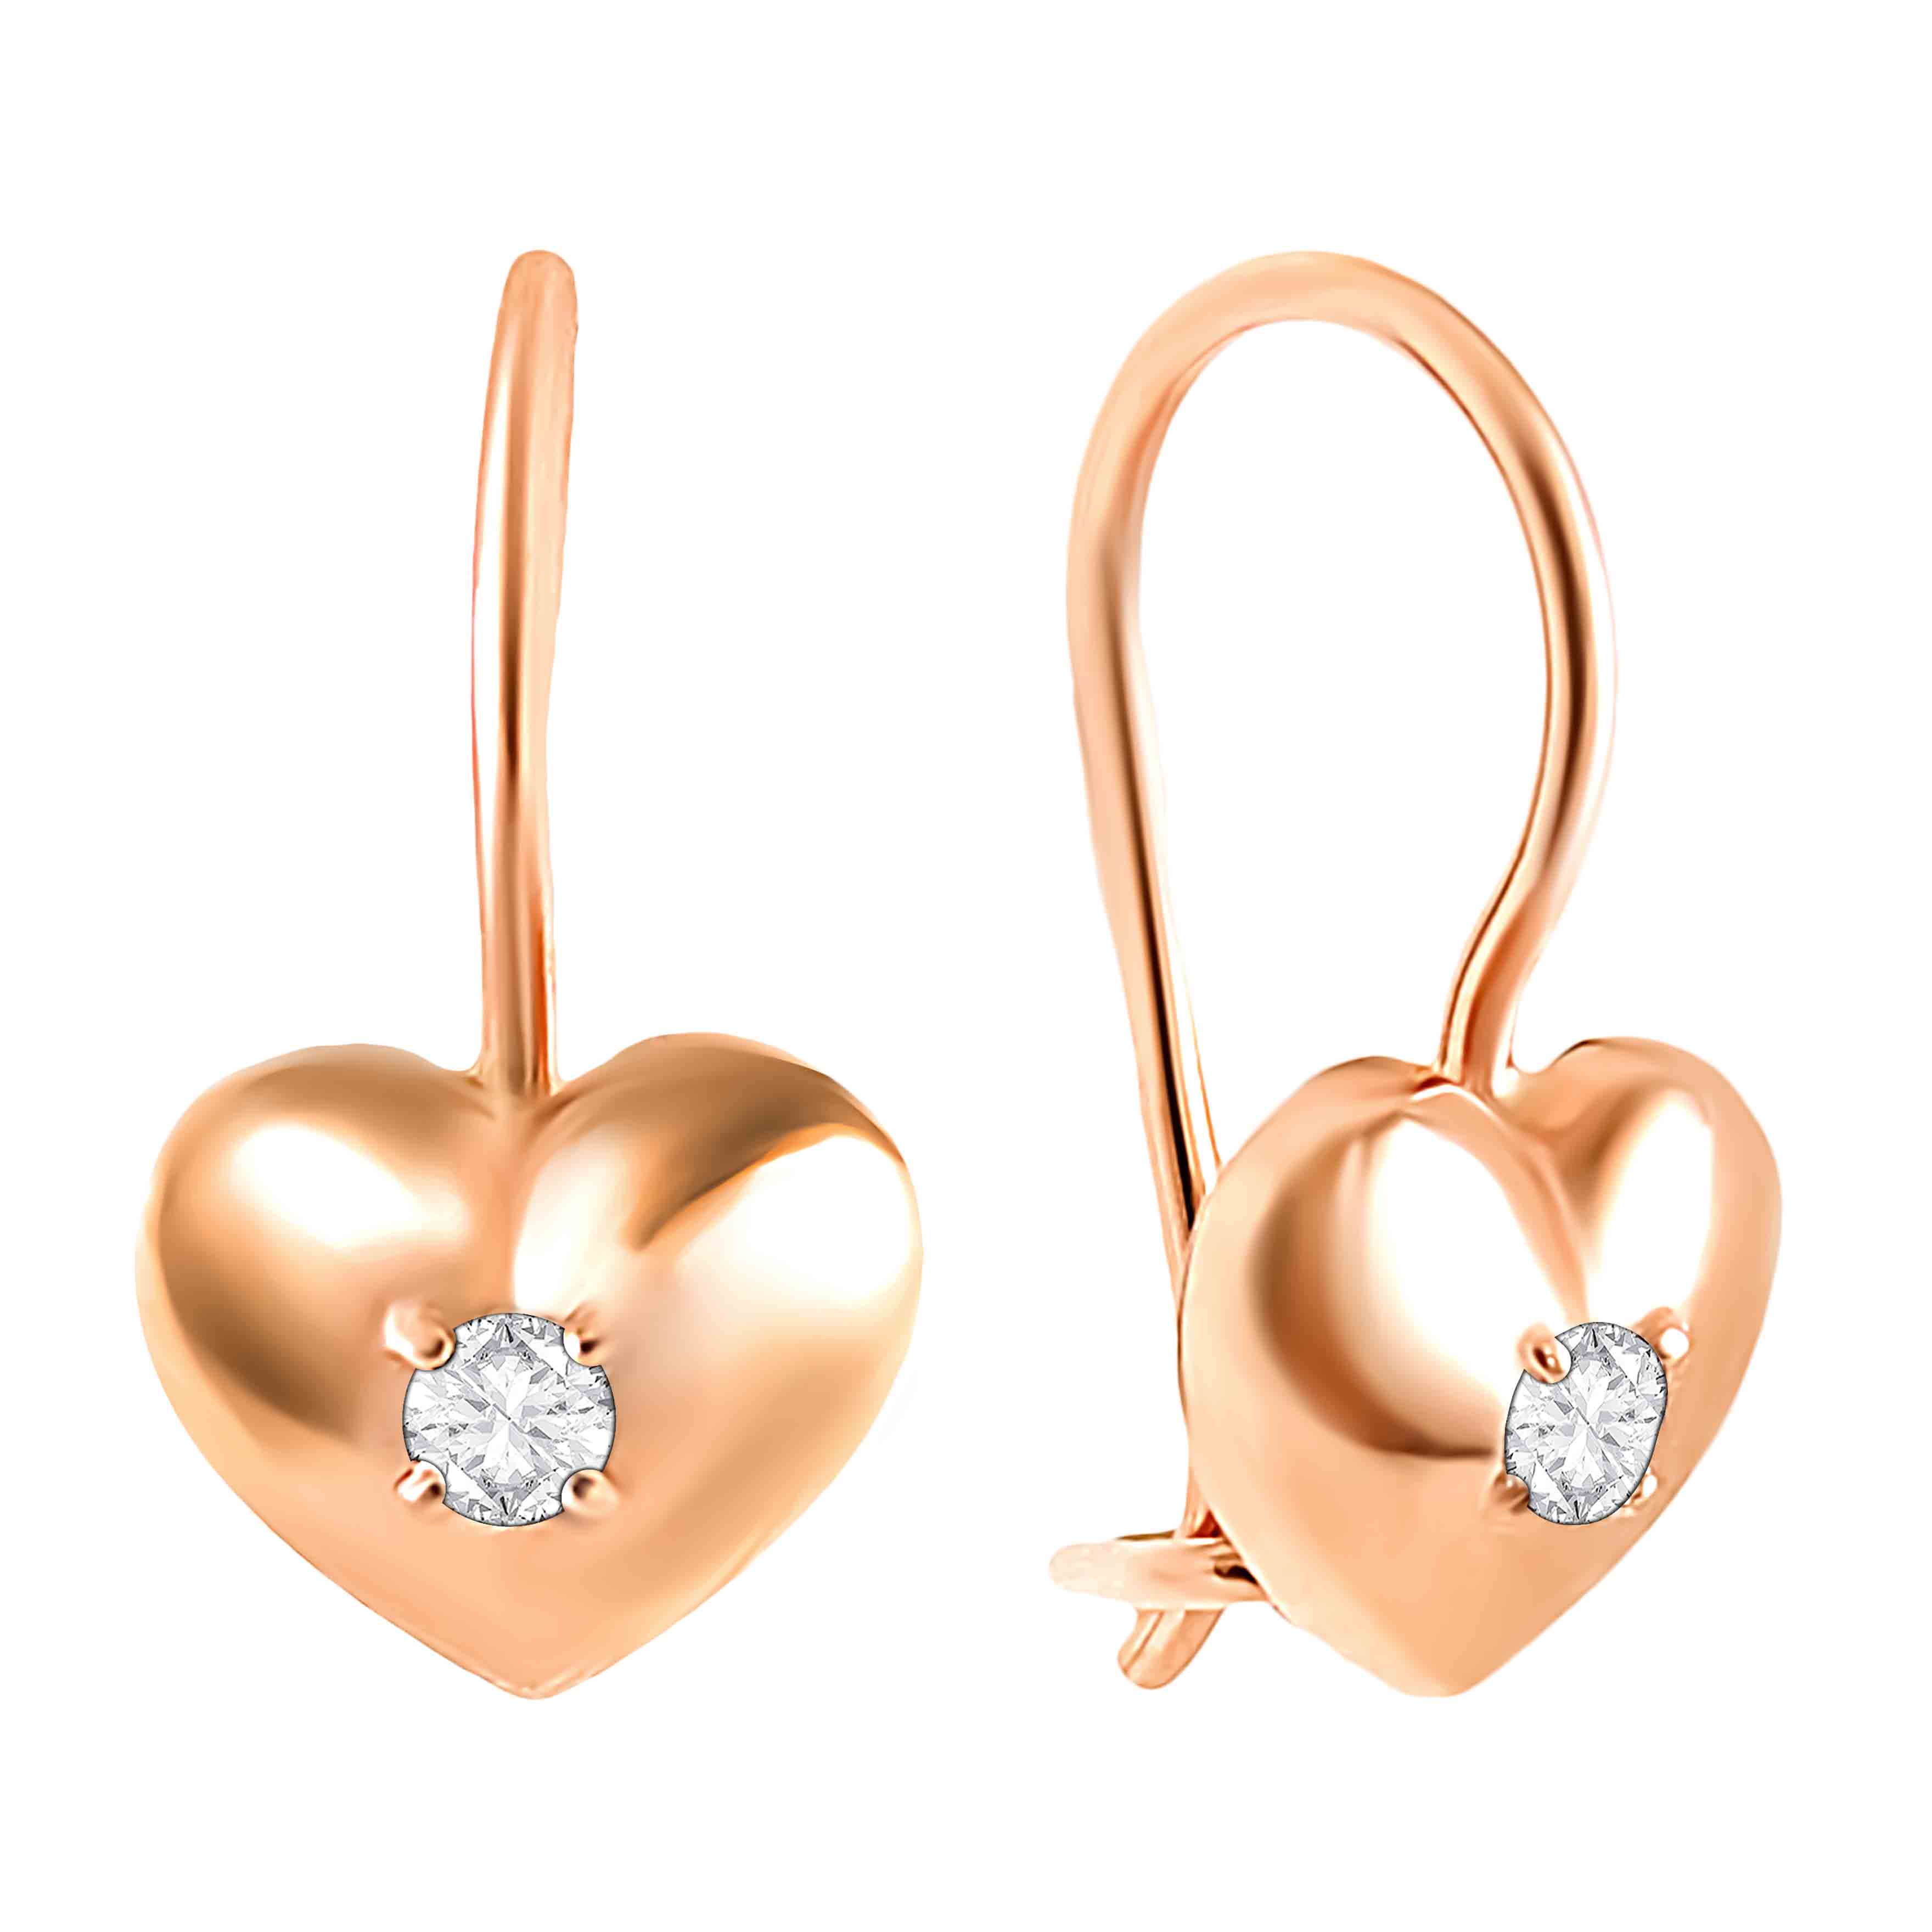 Kids heart earrings in 585 rose gold